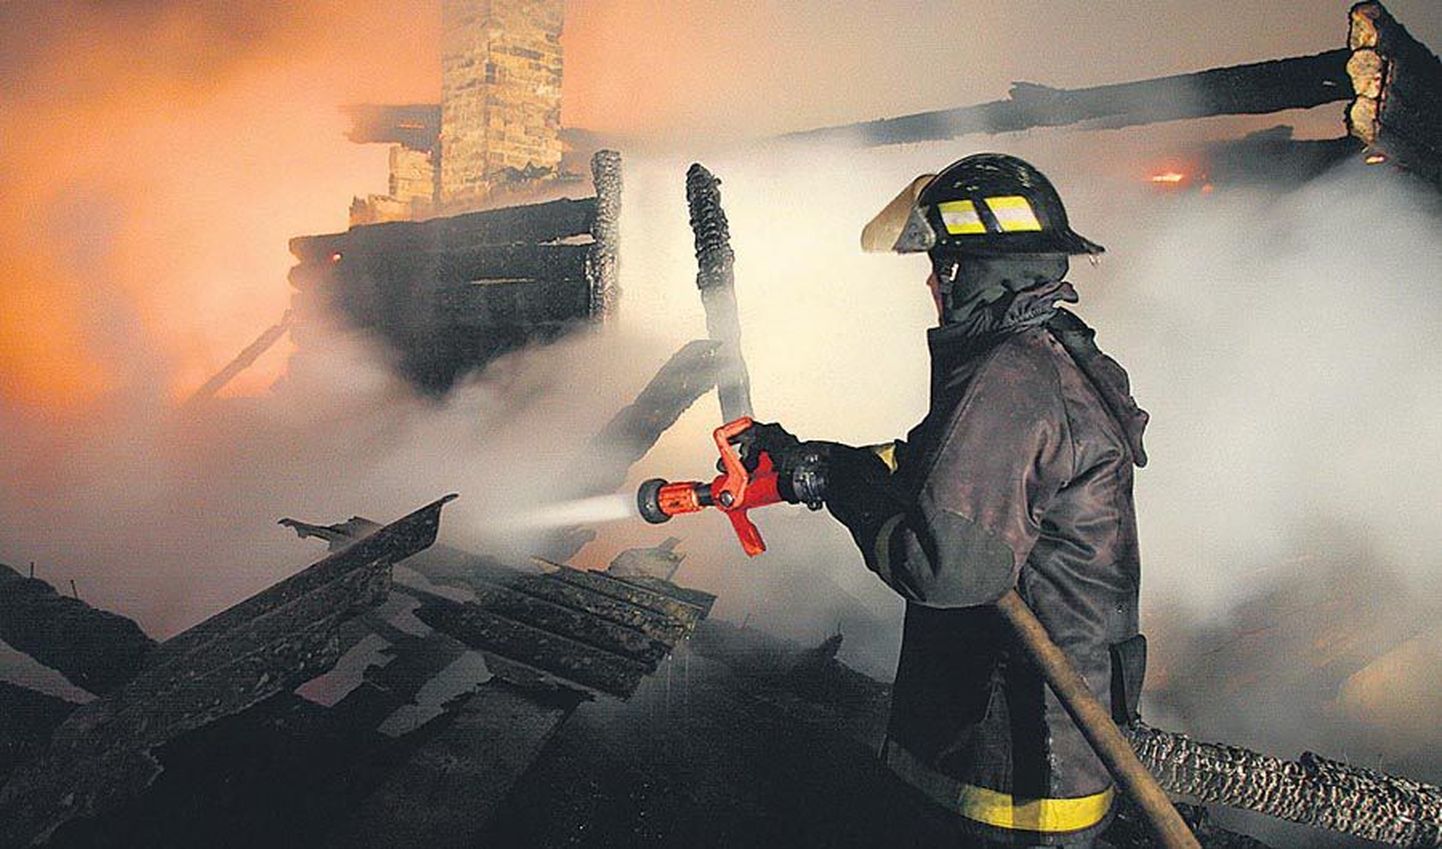 Et tuletõrjujad võimalikult ruttu sündmuskohale jõuaksid, on vaja helistada kiiresti numbril 112 ja anda võimalikult täpne õpetus, kuidas kohale pääseda. See on eriti oluline maapiirkonnas.